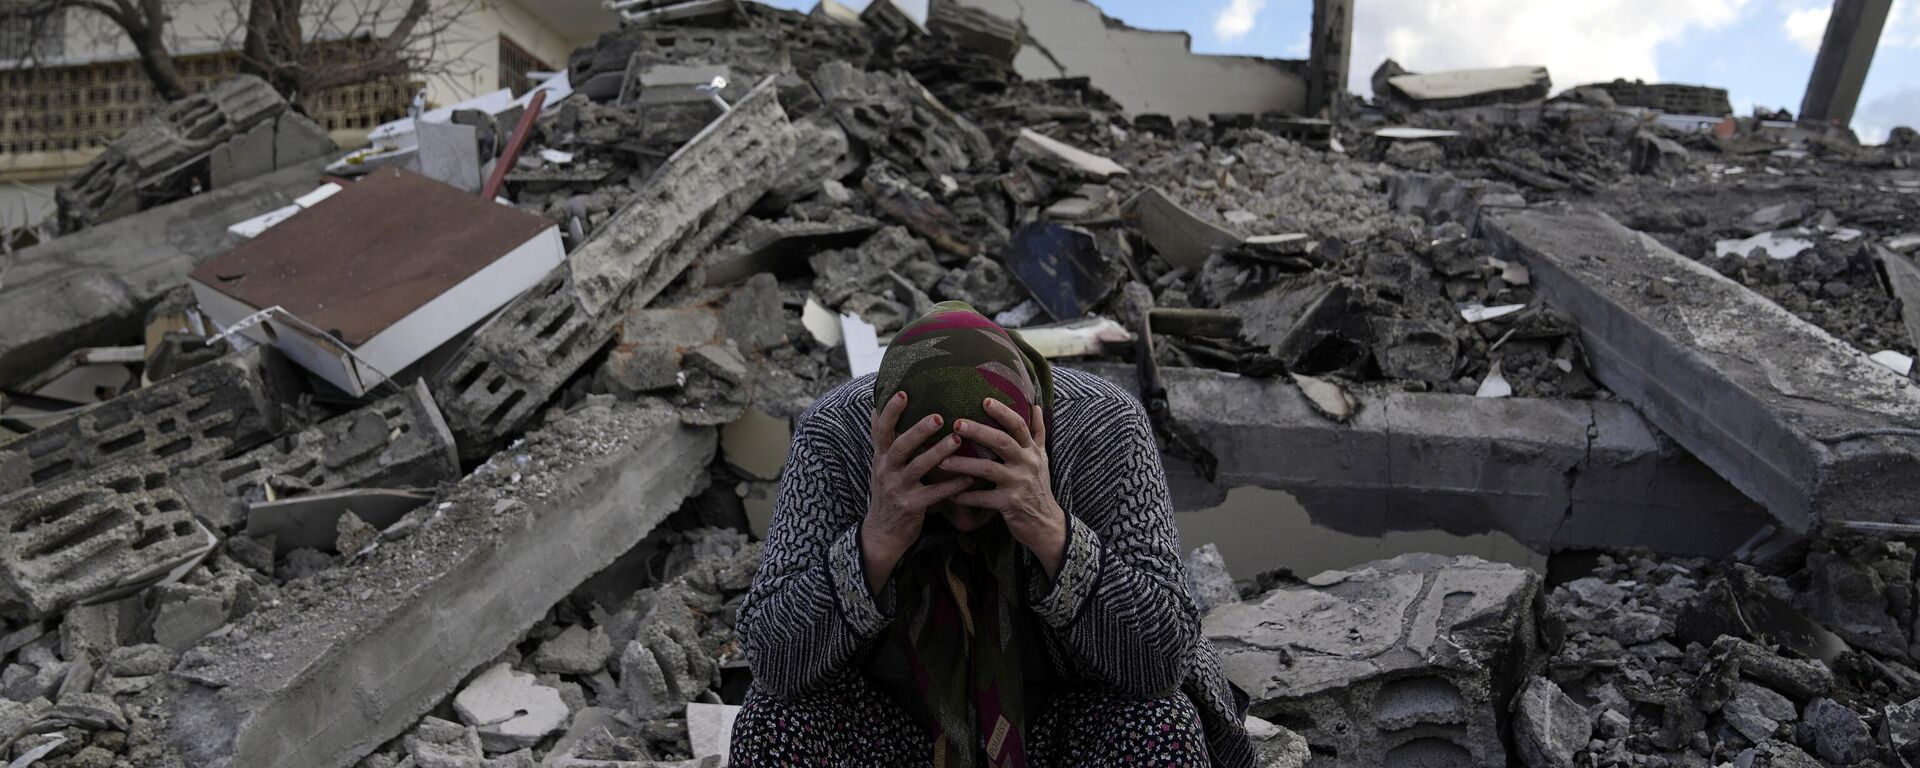 Kahramanmaraş merkezli, 10 ili etkileyen 7,7 ve 7,6 büyüklüğündeki deprem, Osmaniye'nin Nurdağı ilçesinde de yıkıma neden oldu. - Sputnik Türkiye, 1920, 09.02.2023